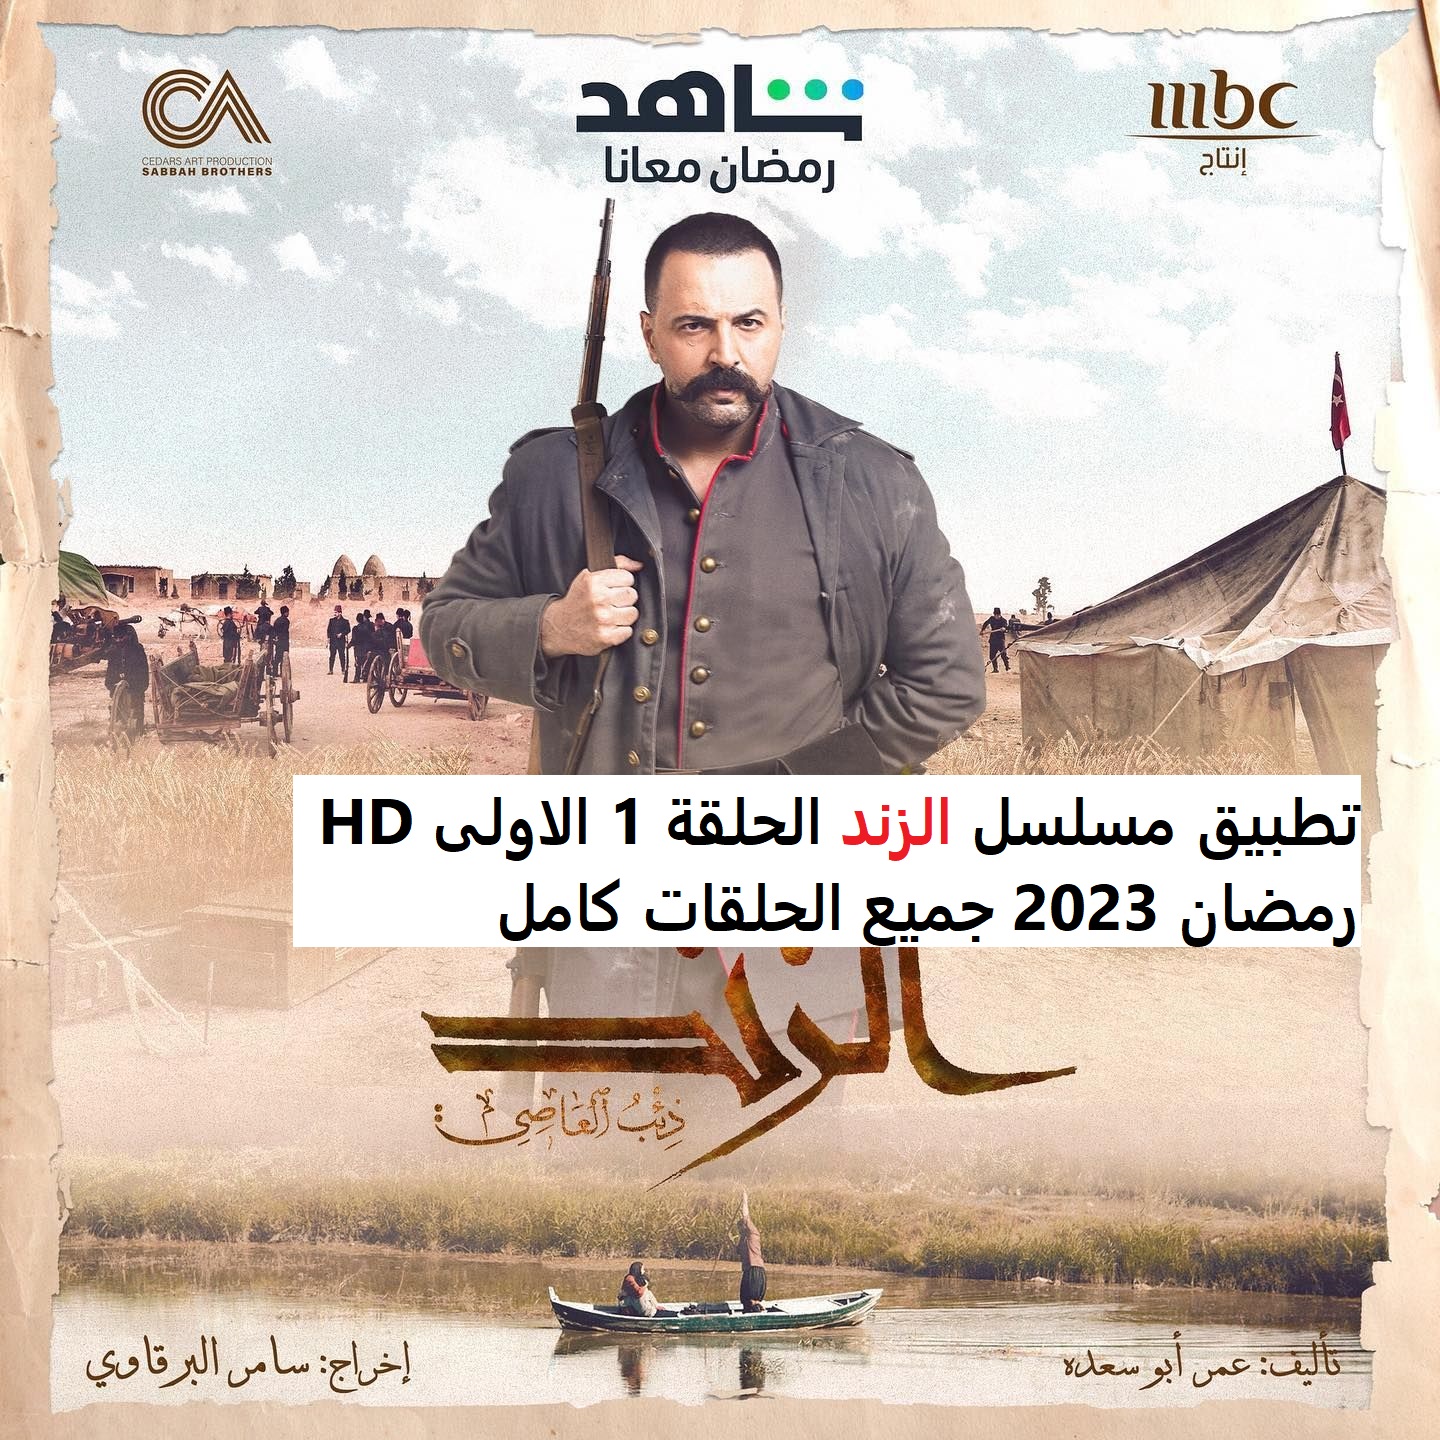 تحميل تطبيق مسلسل الزند الحلقة 1 الاولى HD رمضان 2023 جميع الحلقات كامل